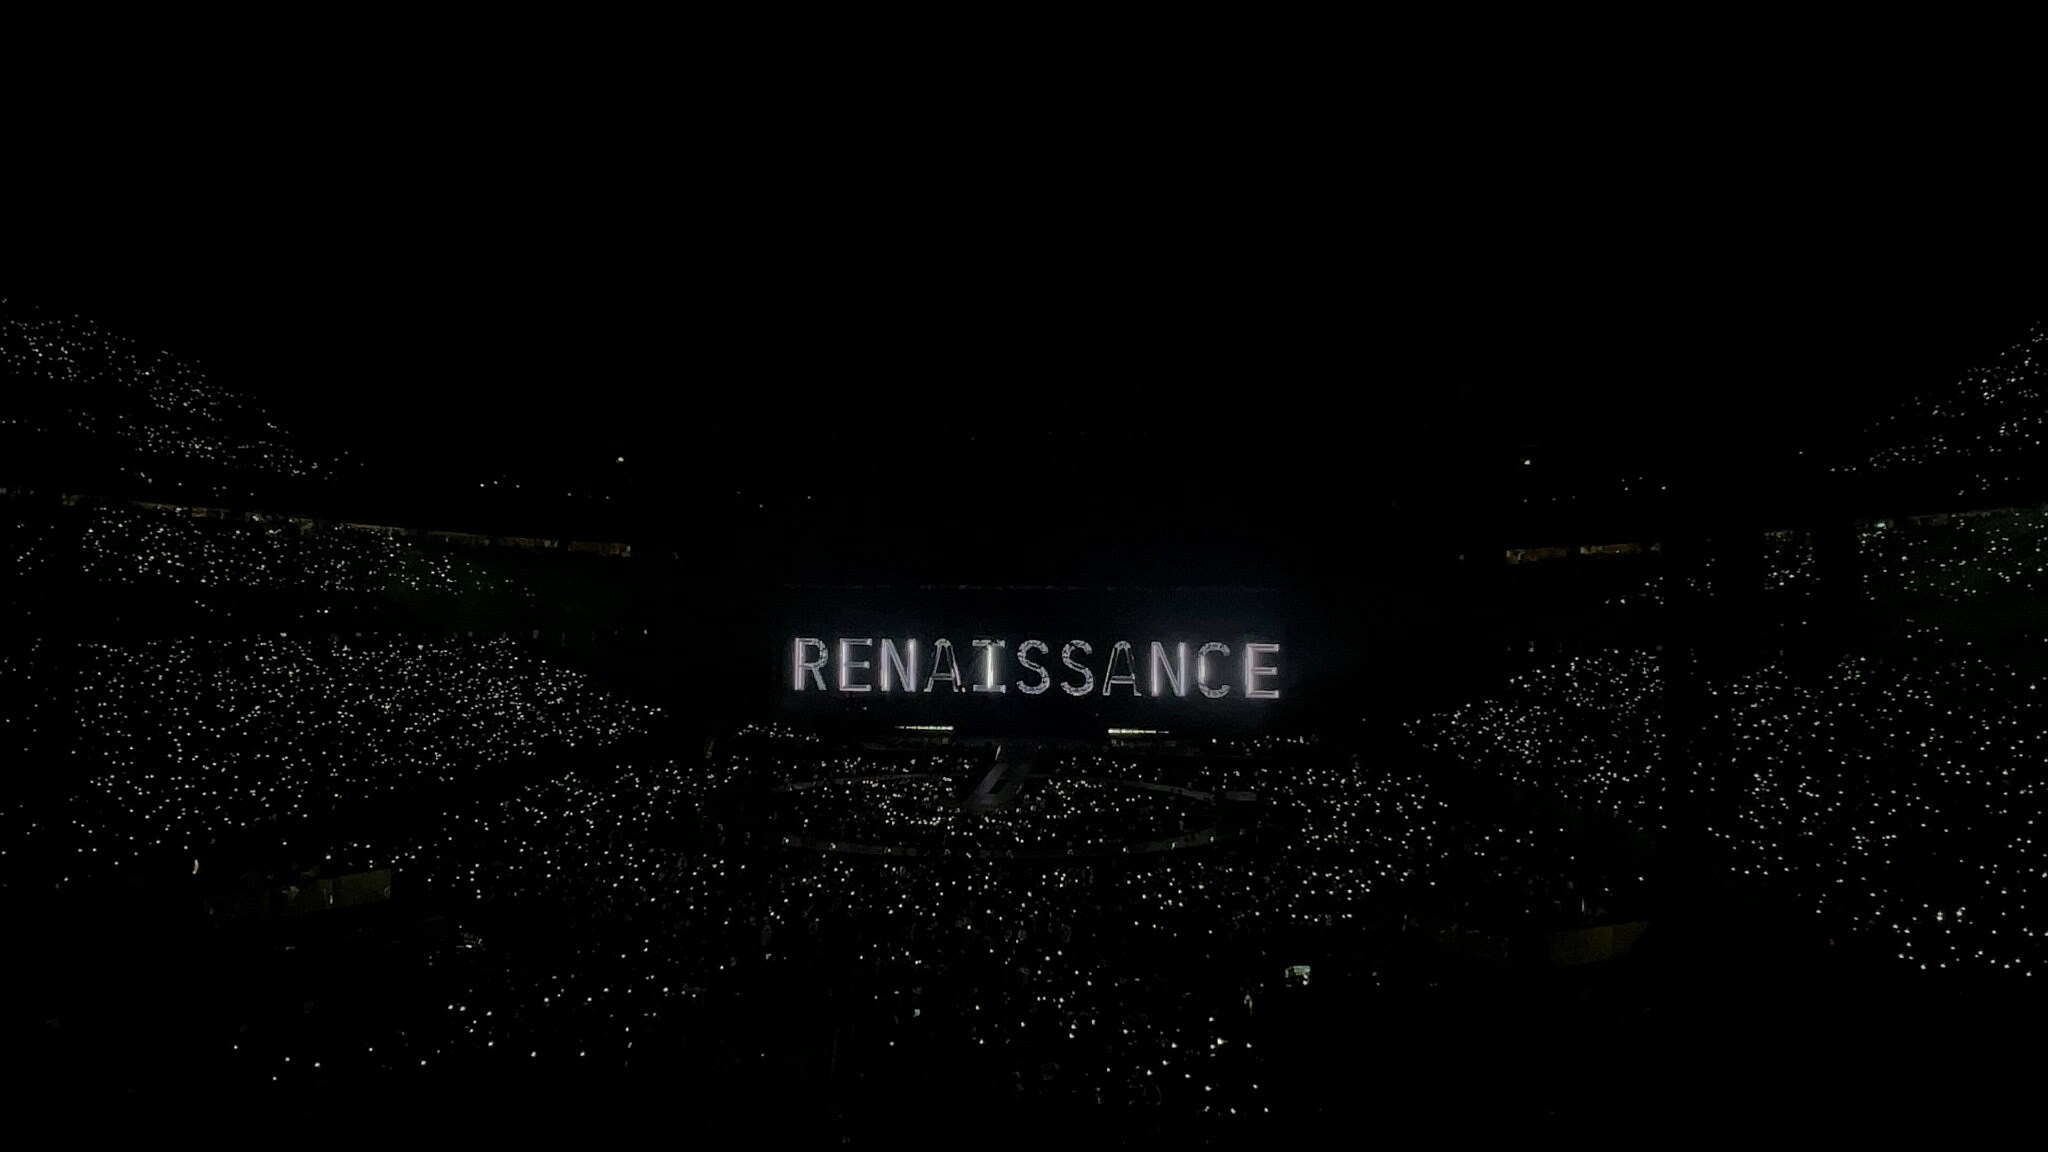 Beyoncé Takes Over Houston For Renaissance World Tour